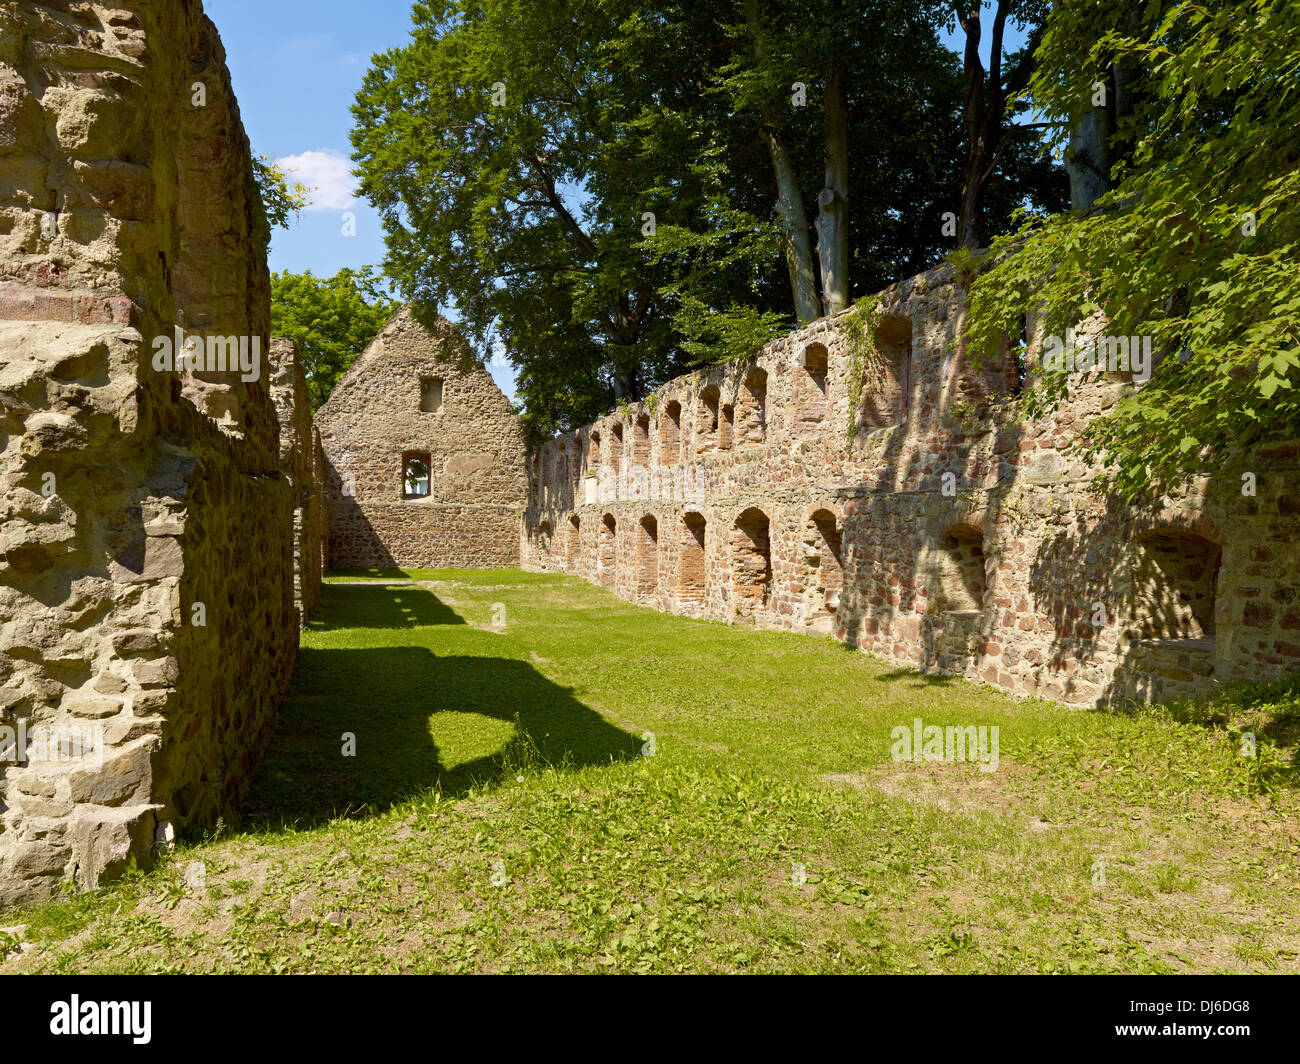 Ruined Abbey Nimbschen, Saxony, Germany Stock Photo